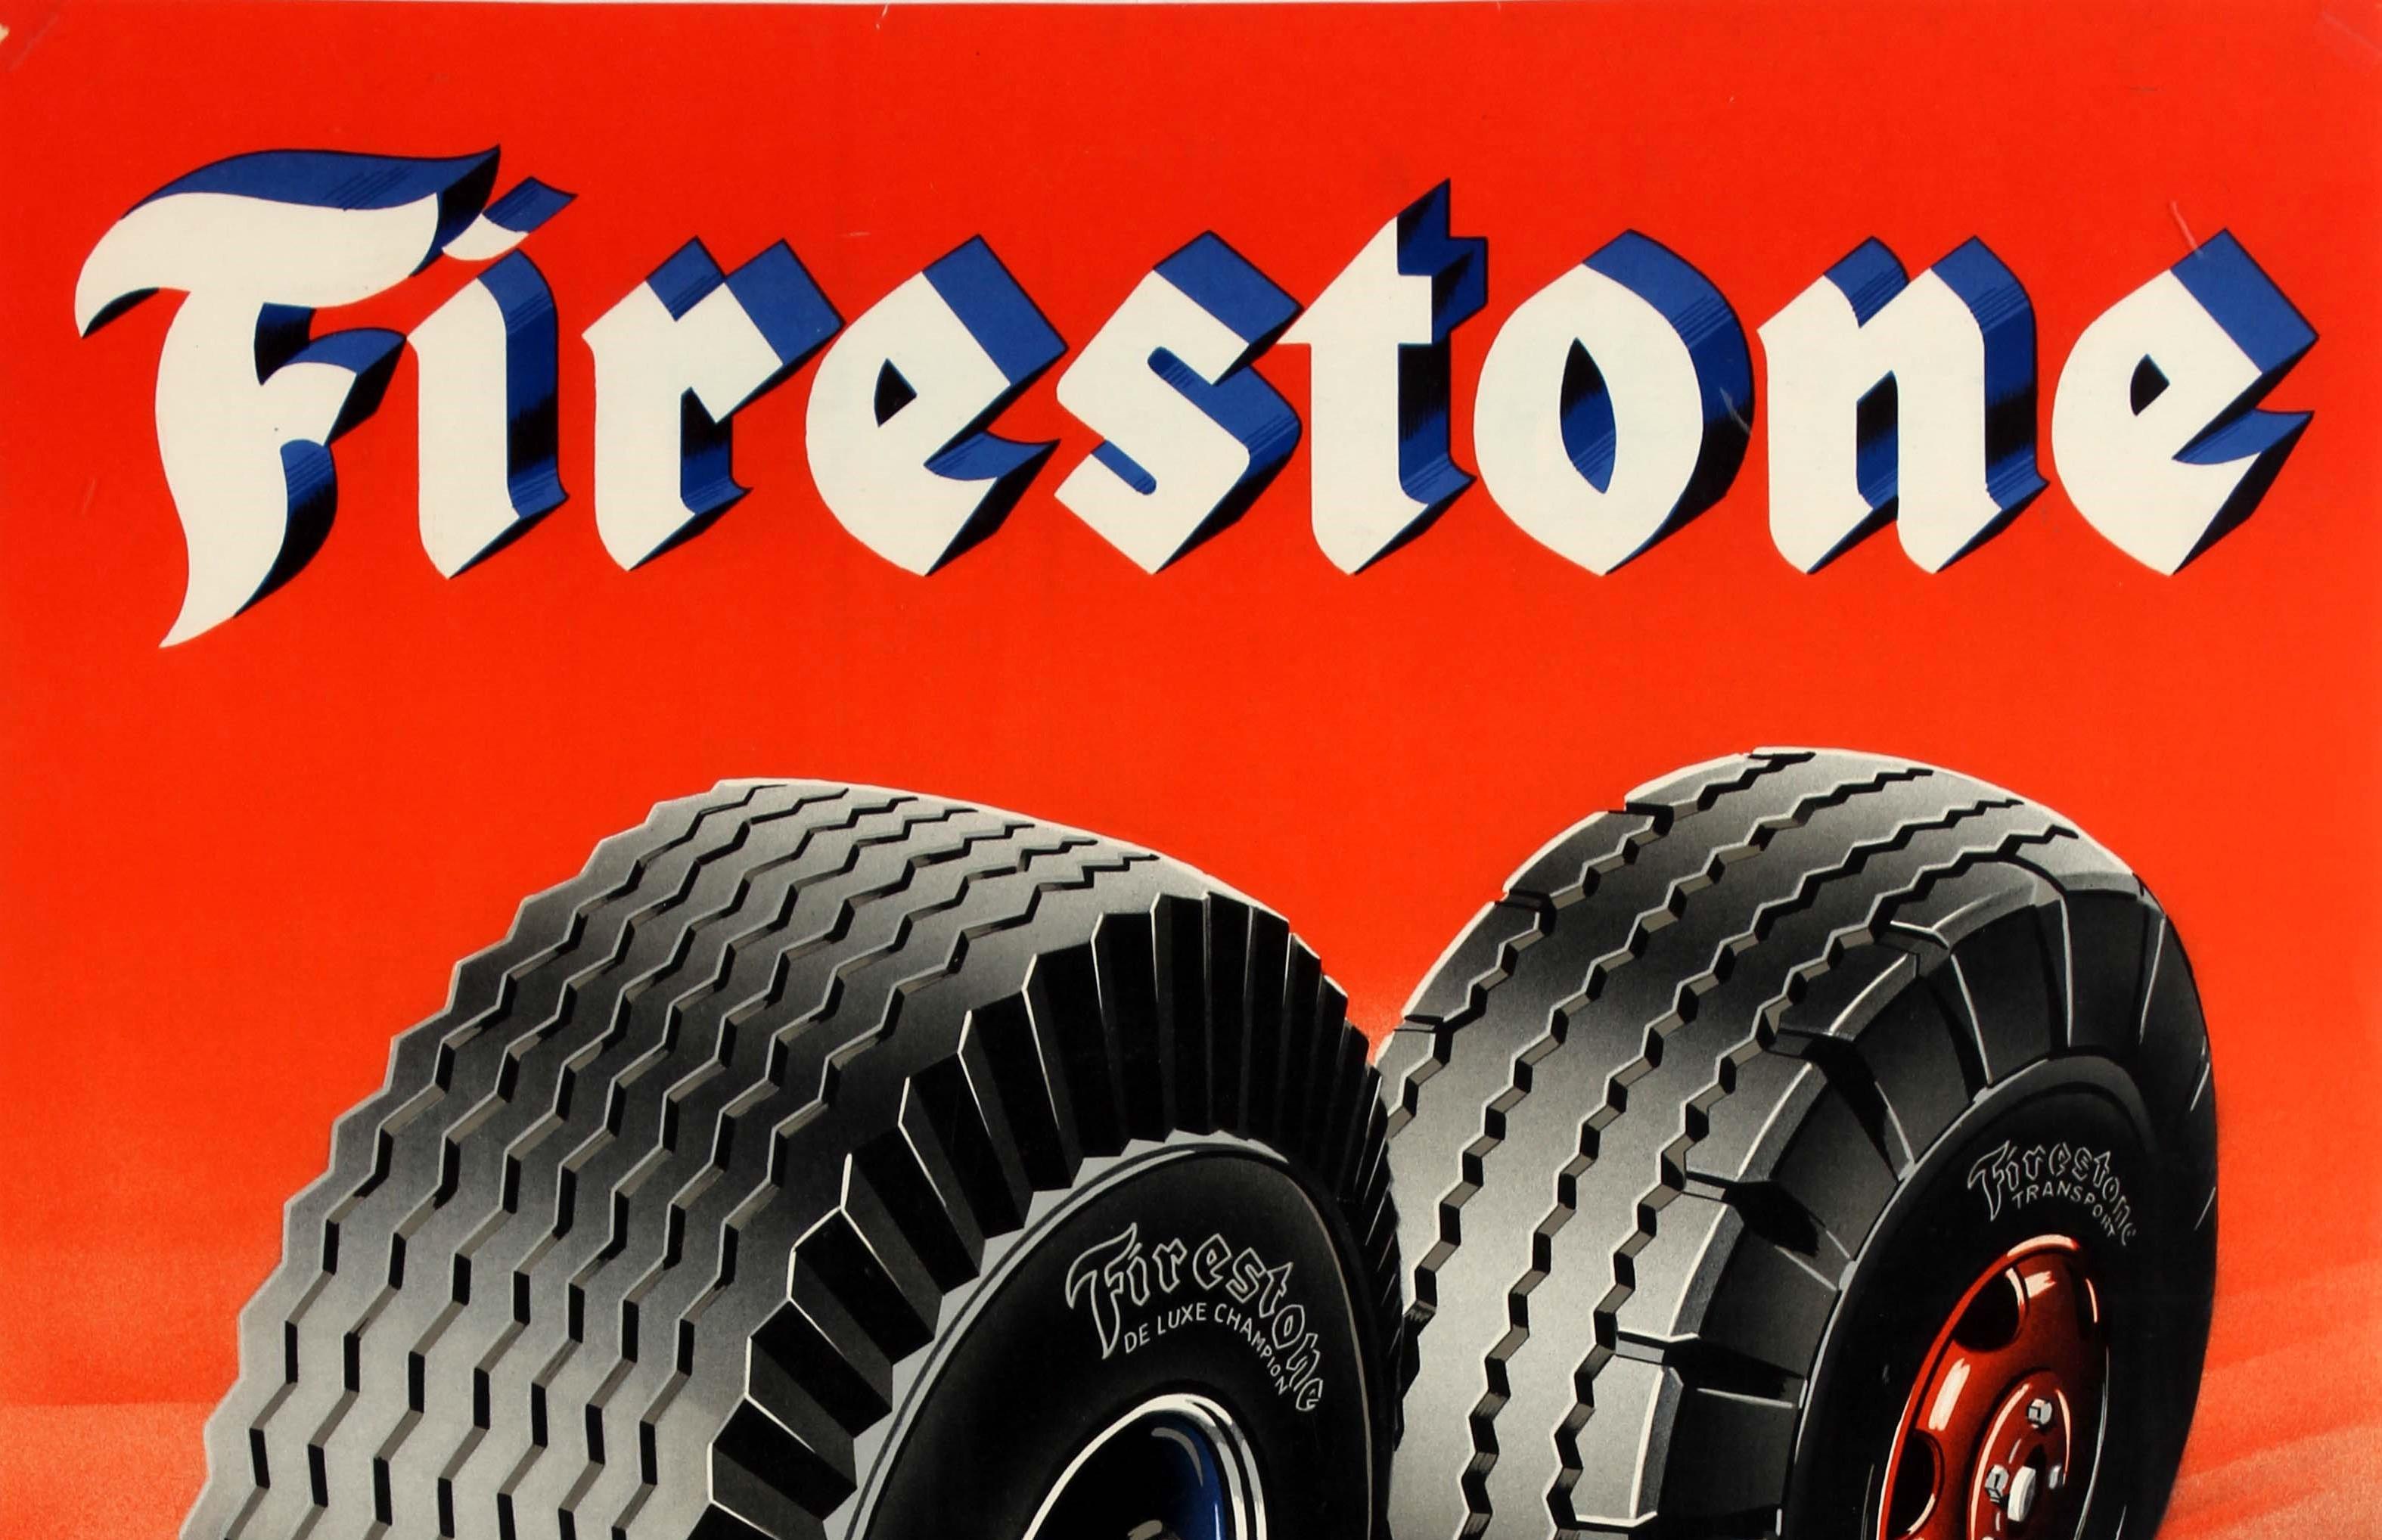 Original Vintage Advertising Poster Firestone Tires Most Kilometers Per Krone - Print by Aage Lippert